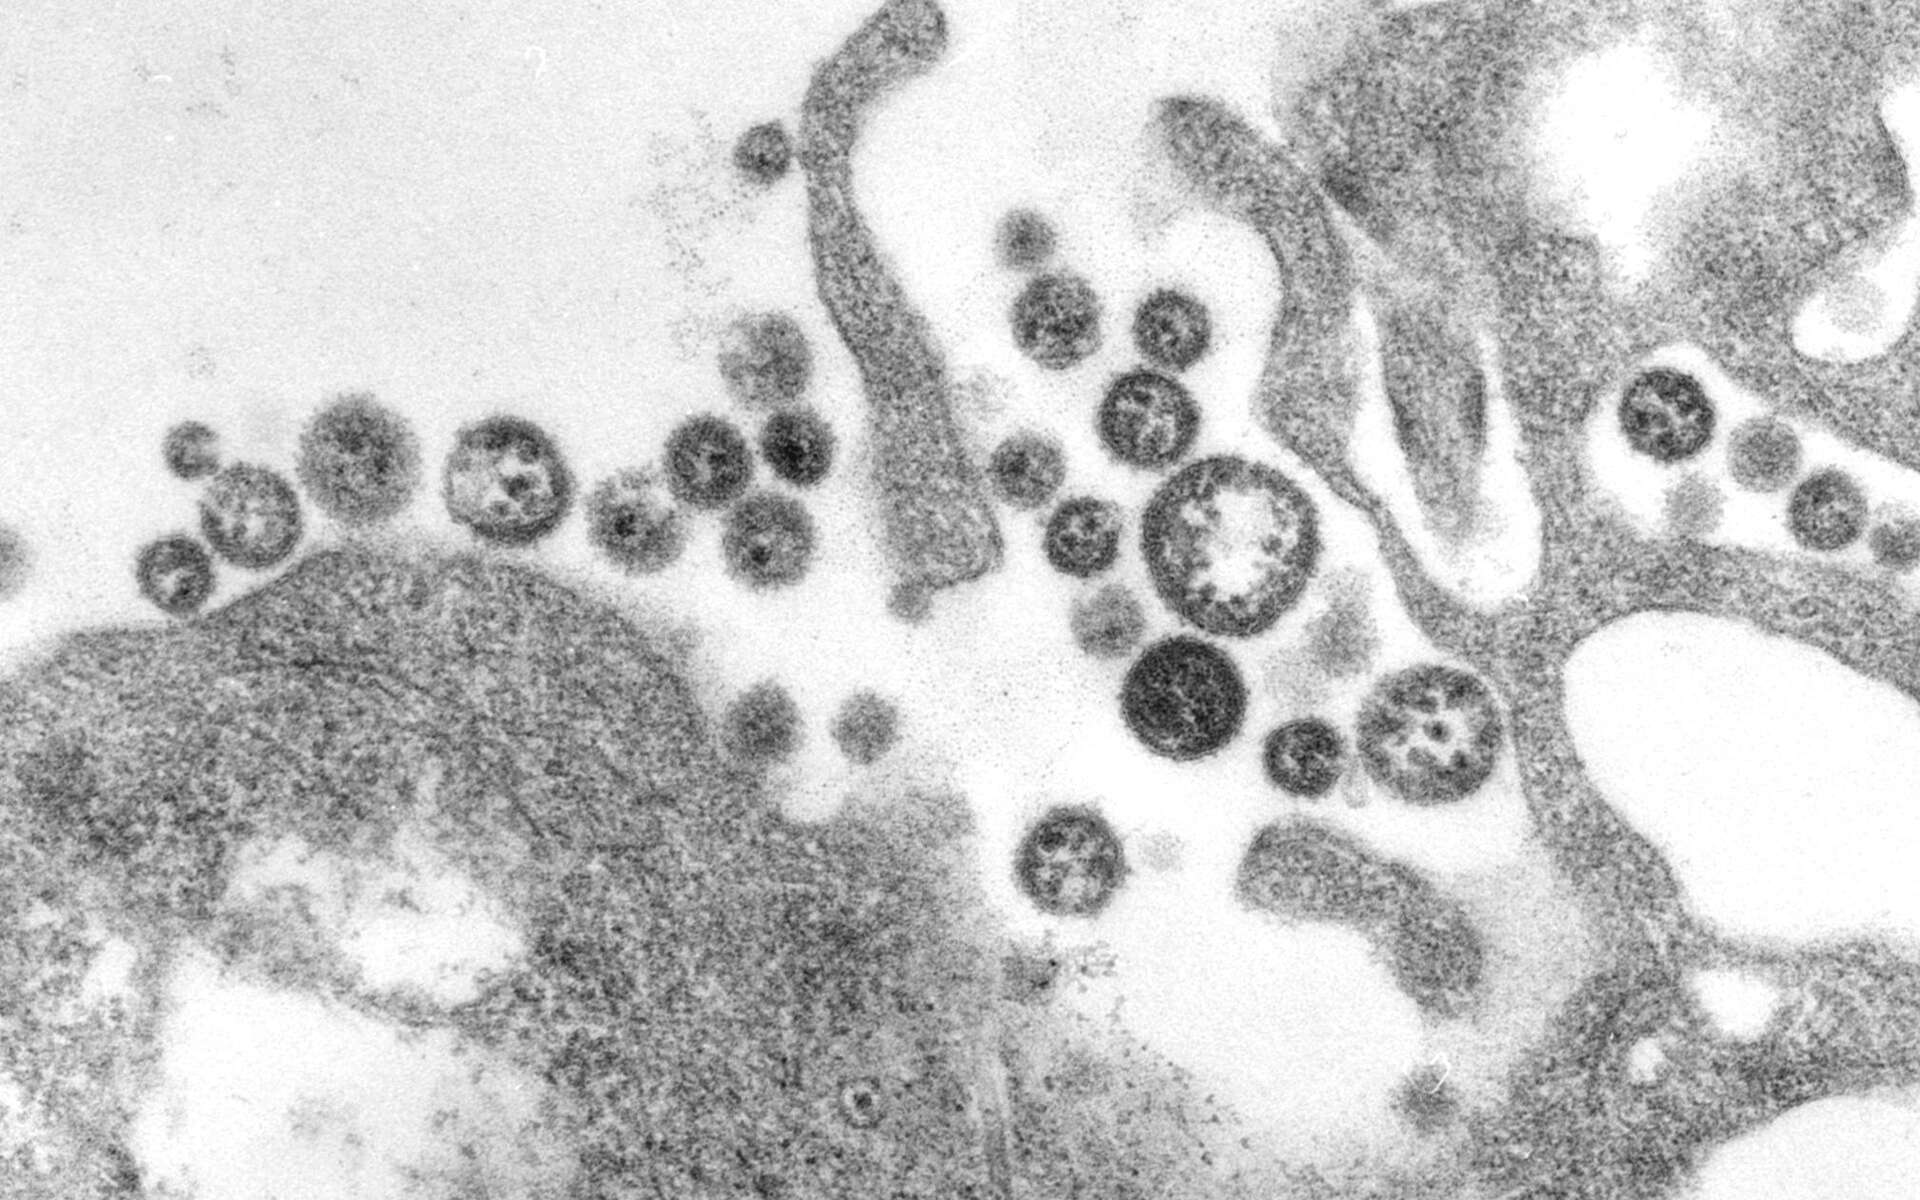 Image du virus de la fièvre de Lhassa, un virus faisant partie du même groupe que le virus Chapare. © CDC's Public Health Image Library